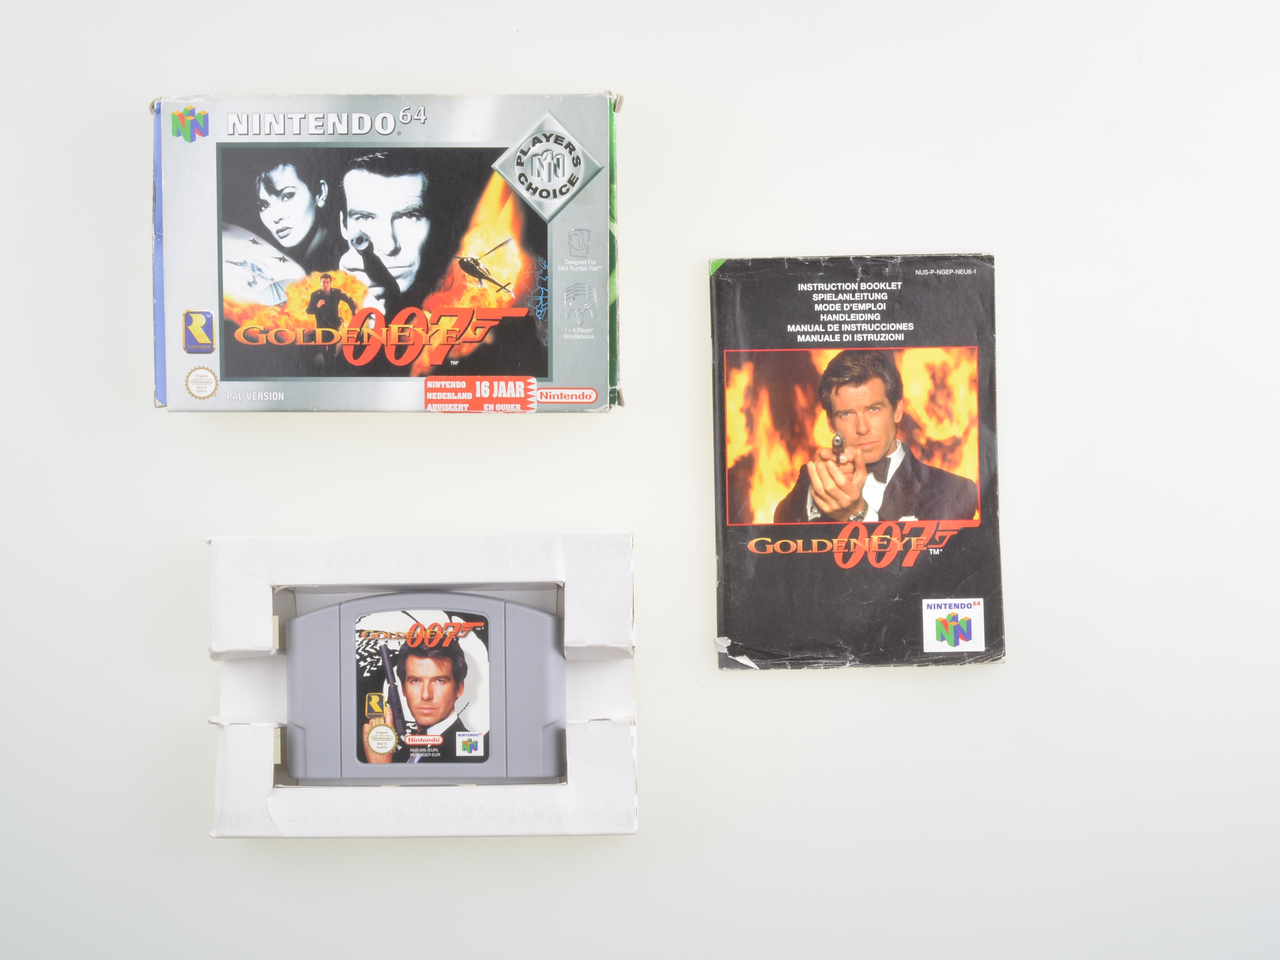 007 Goldeneye - Nintendo 64 Games [Complete]